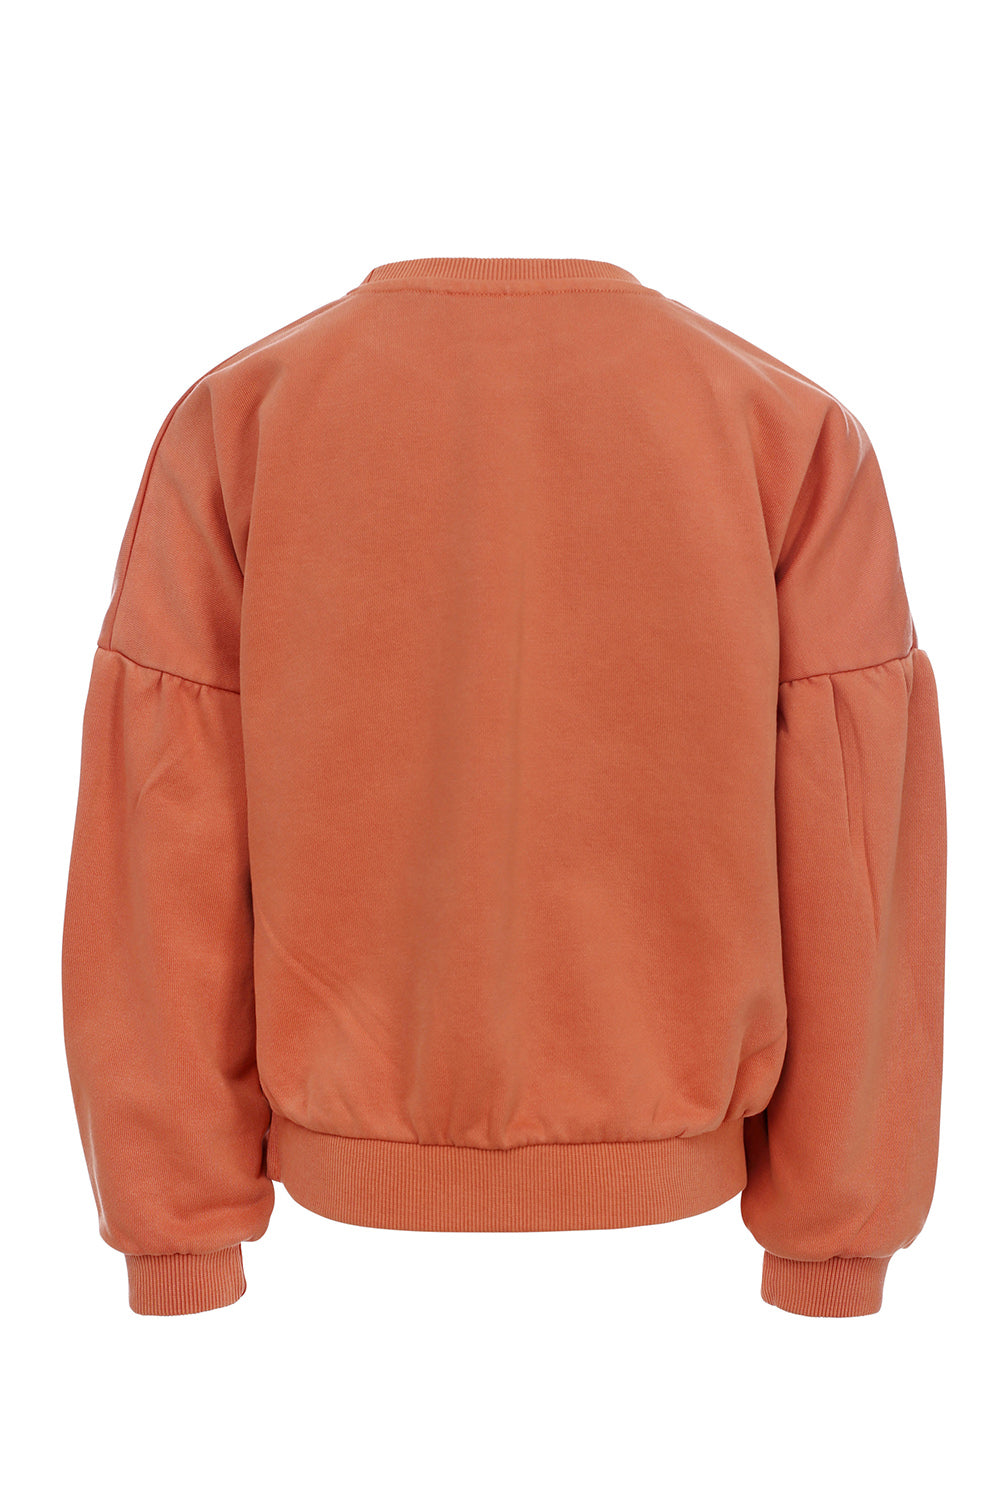 Meisjes Sweater van LOOXS Little in de kleur Warm Orange in maat 128.